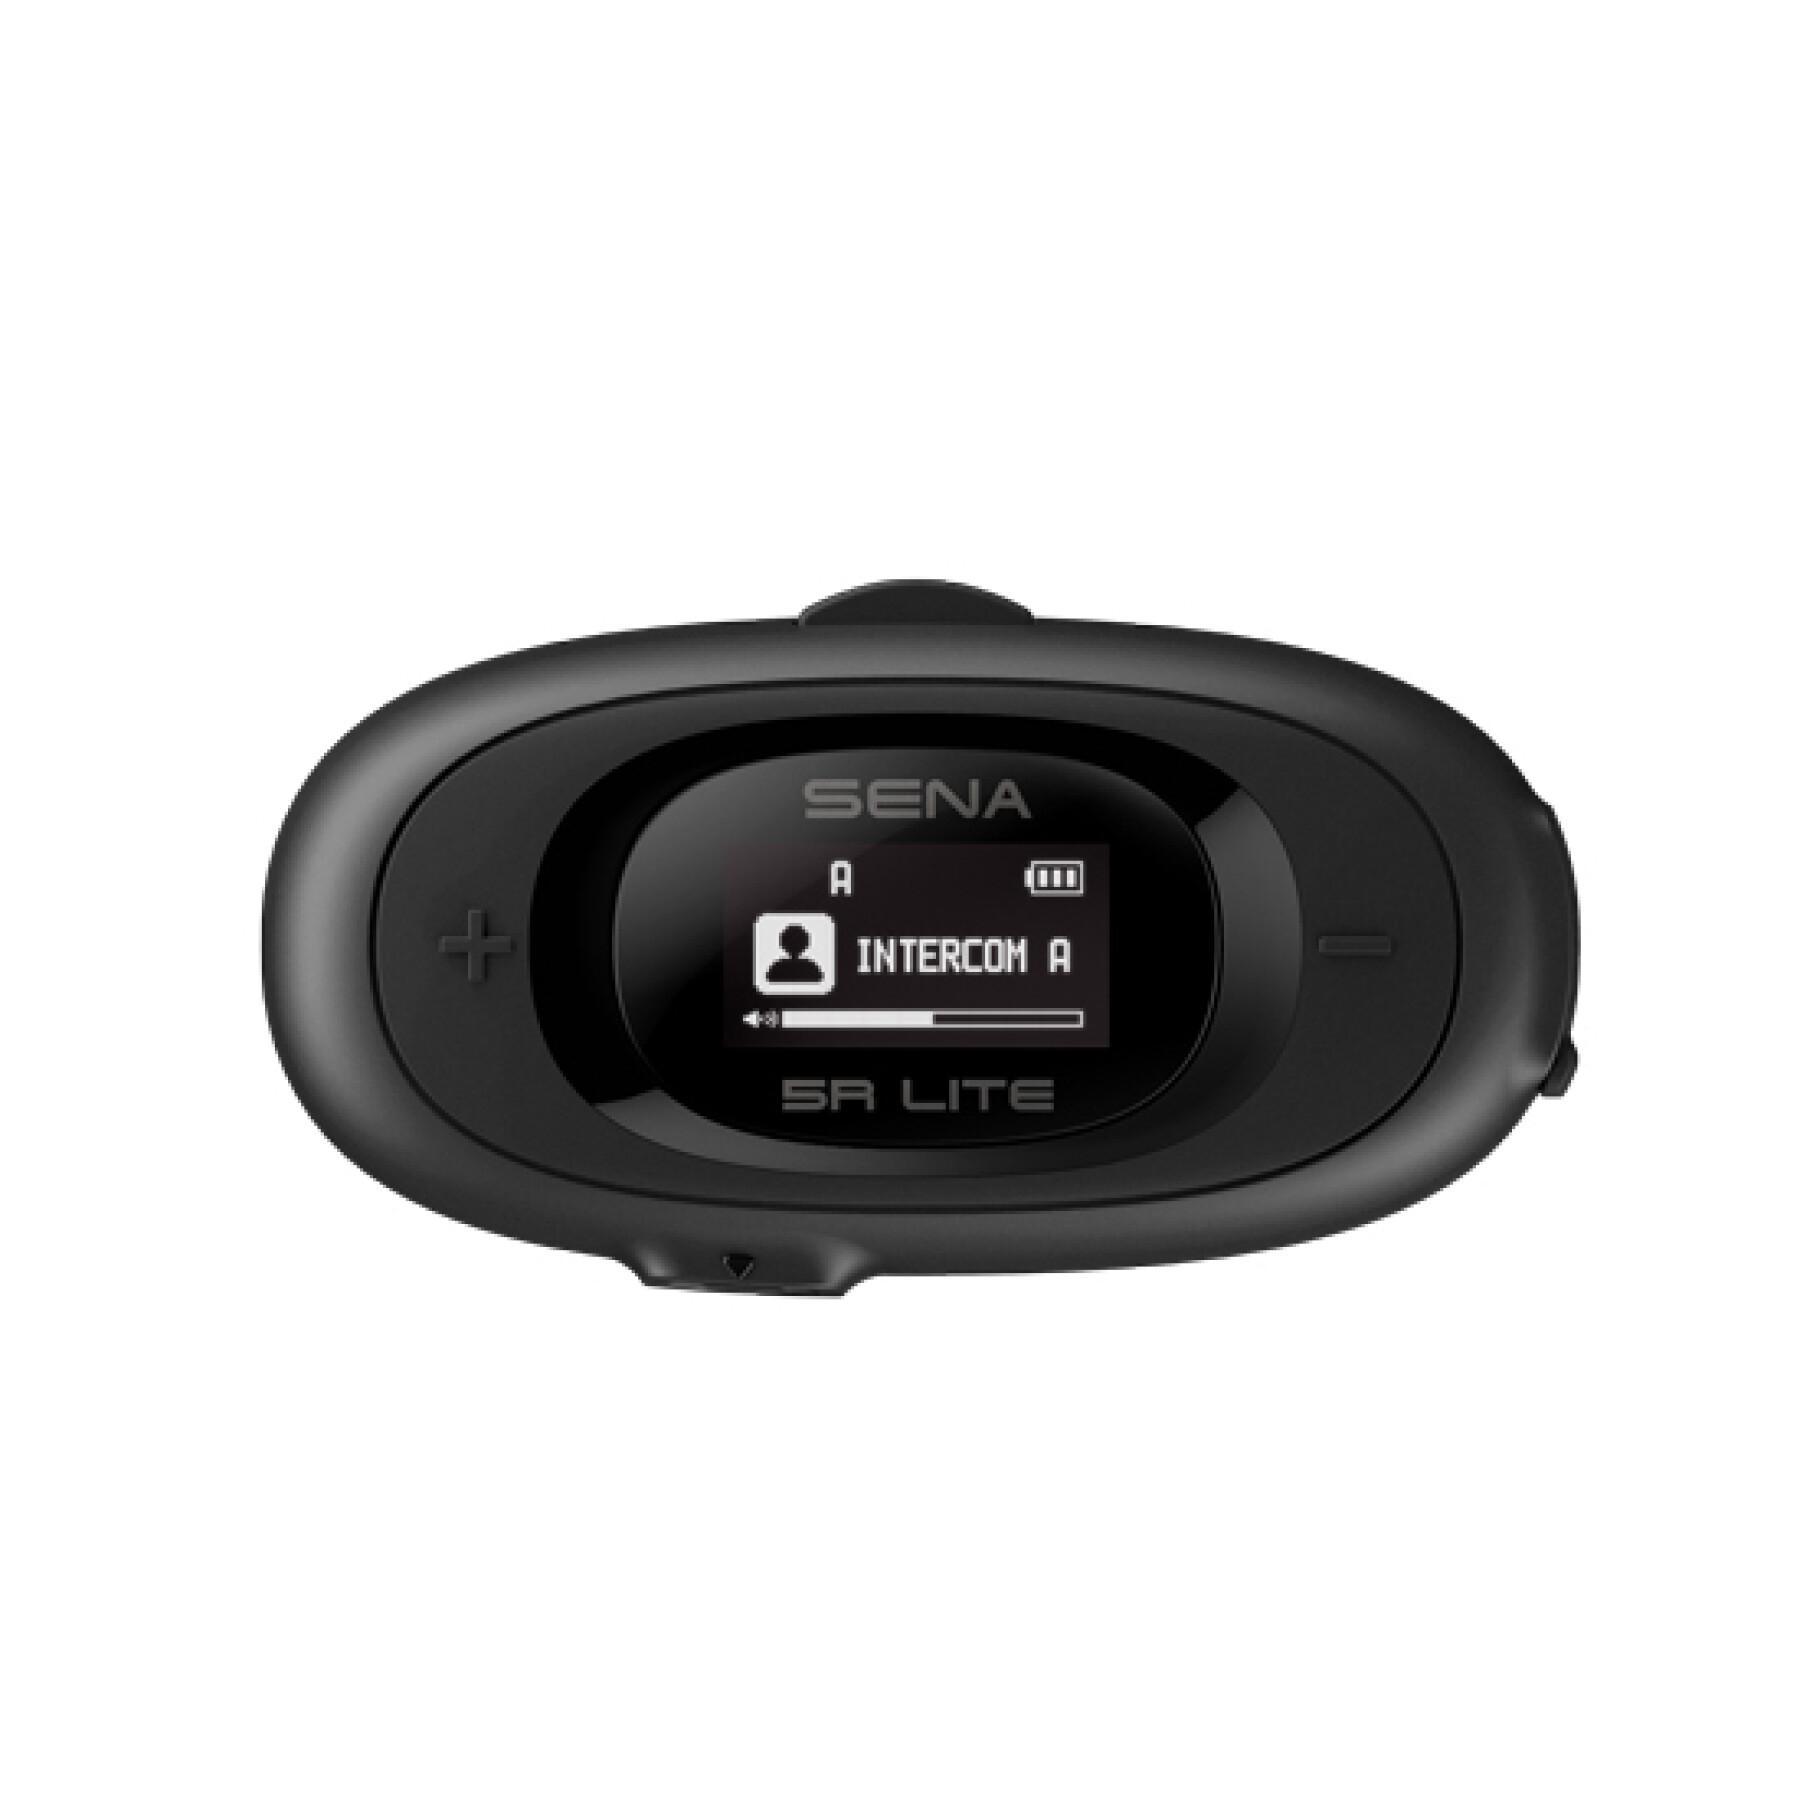 Uppsättning med 2 Bluetooth-intercom för motorcyklar Sena 5R Lite